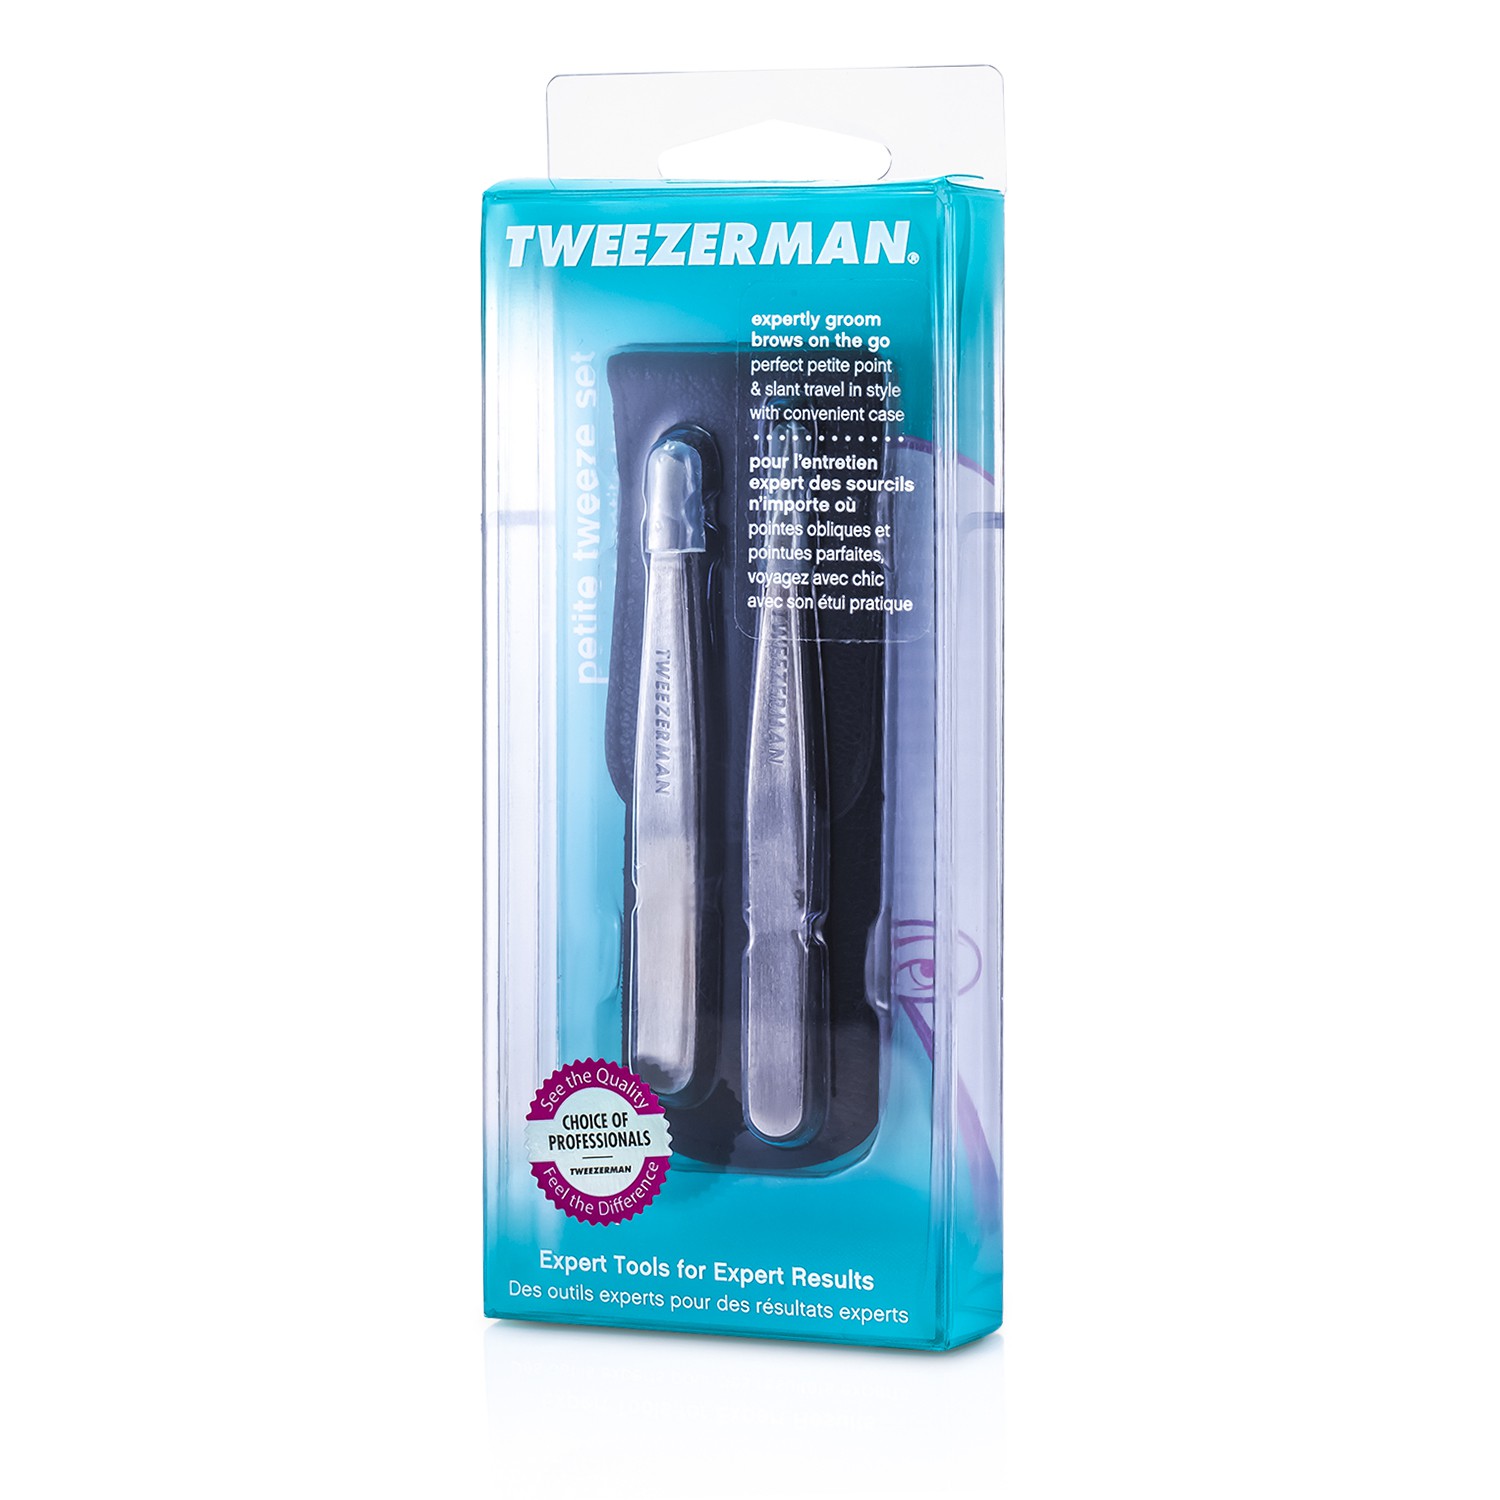 微之魅 Tweezerman - 迷你專業眉夾組合 :專業斜口眉夾+ 專業尖頭斜口眉夾 (連黑色皮套)Petite Tweeze Set: Slant Tweezer + Point Tweezer